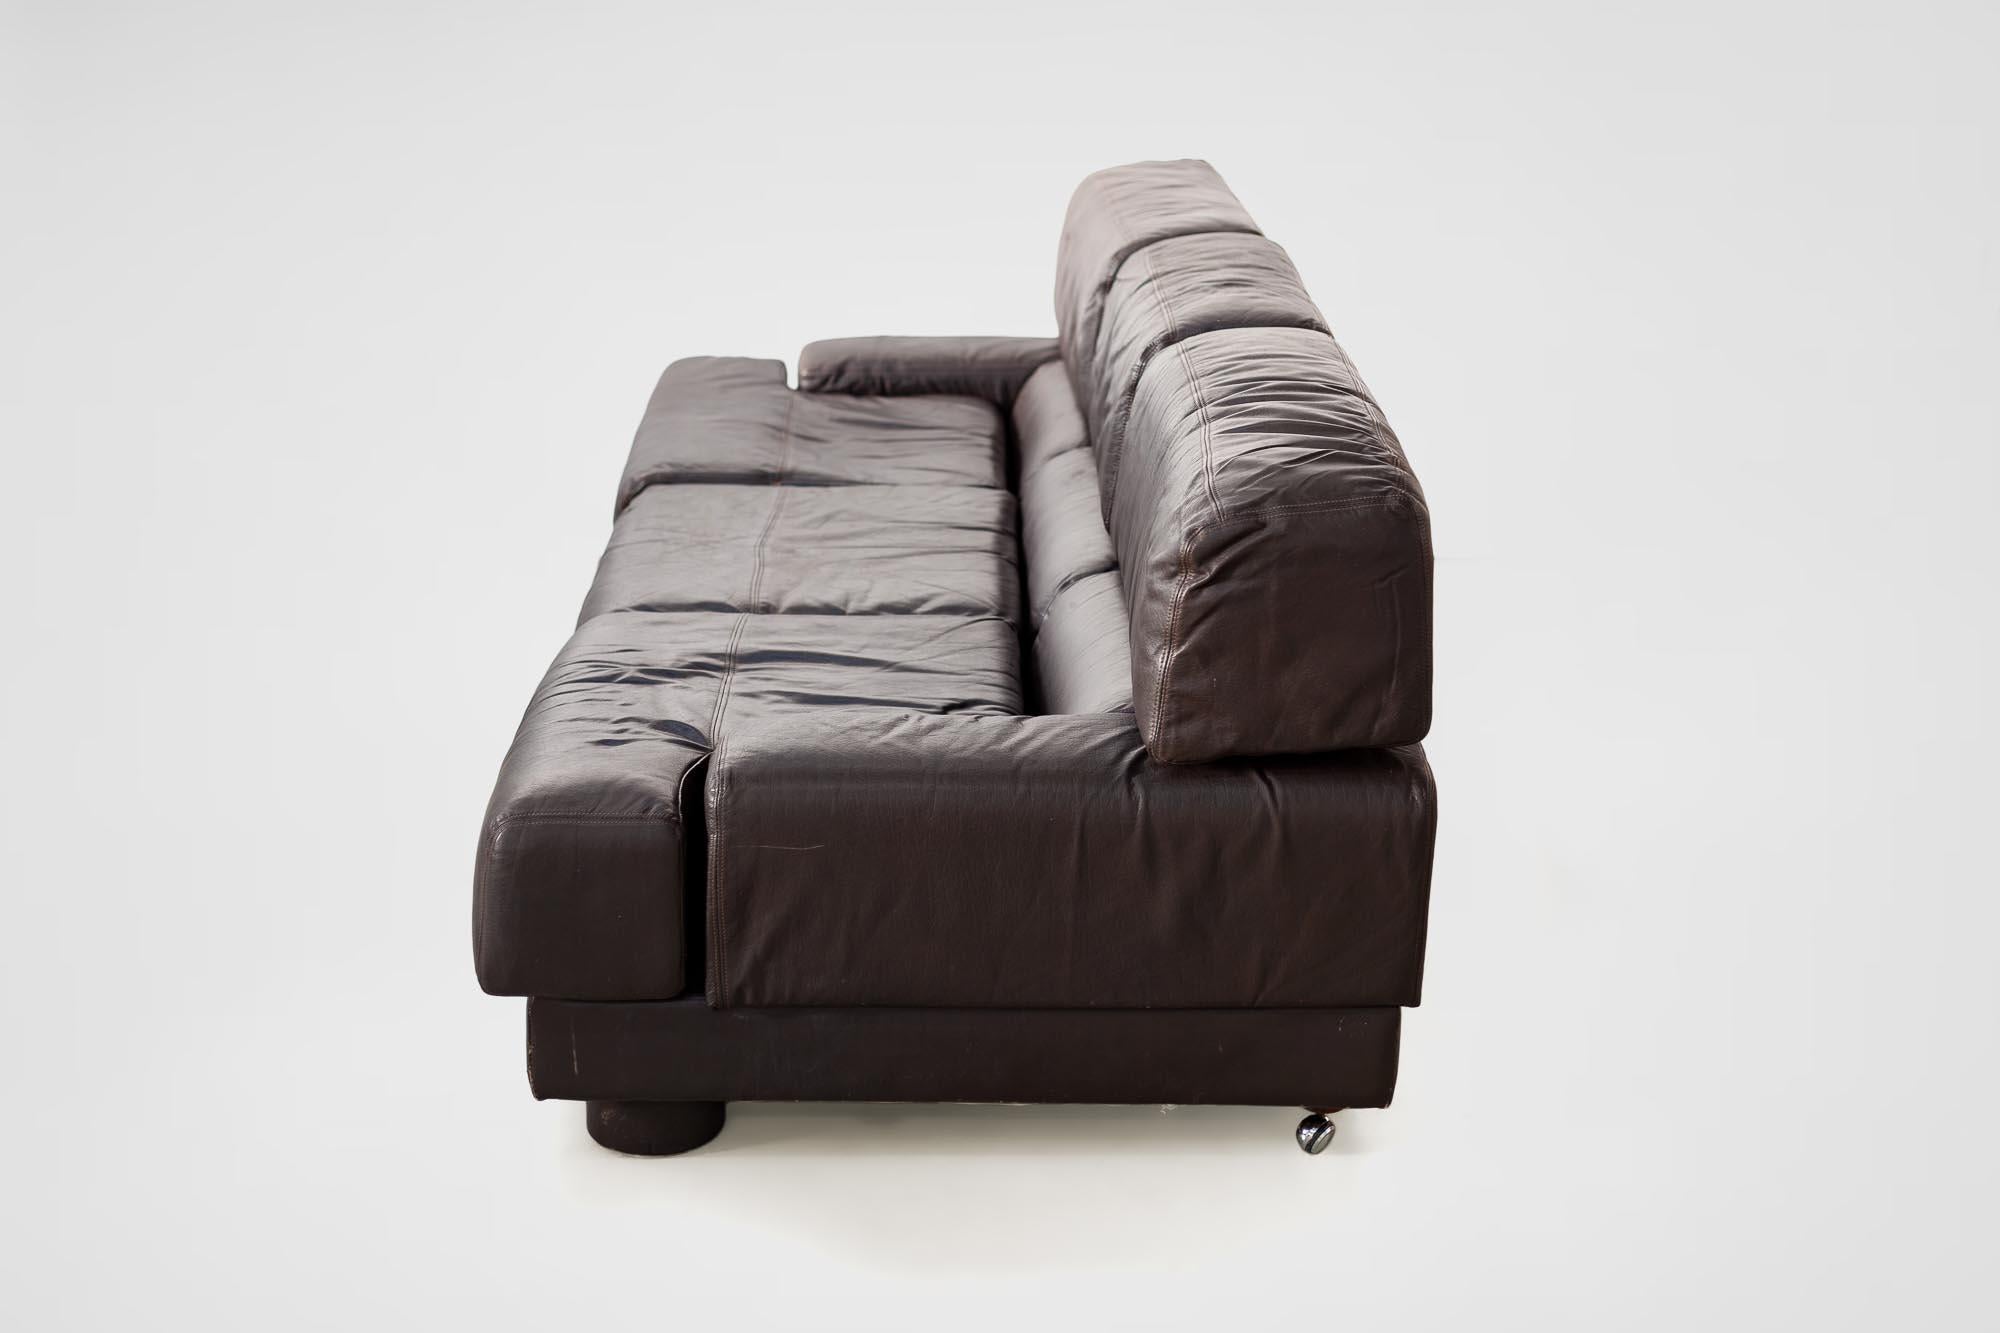 Rare Percival Lafer Sofa in Dark Brown Leather For Sale 1